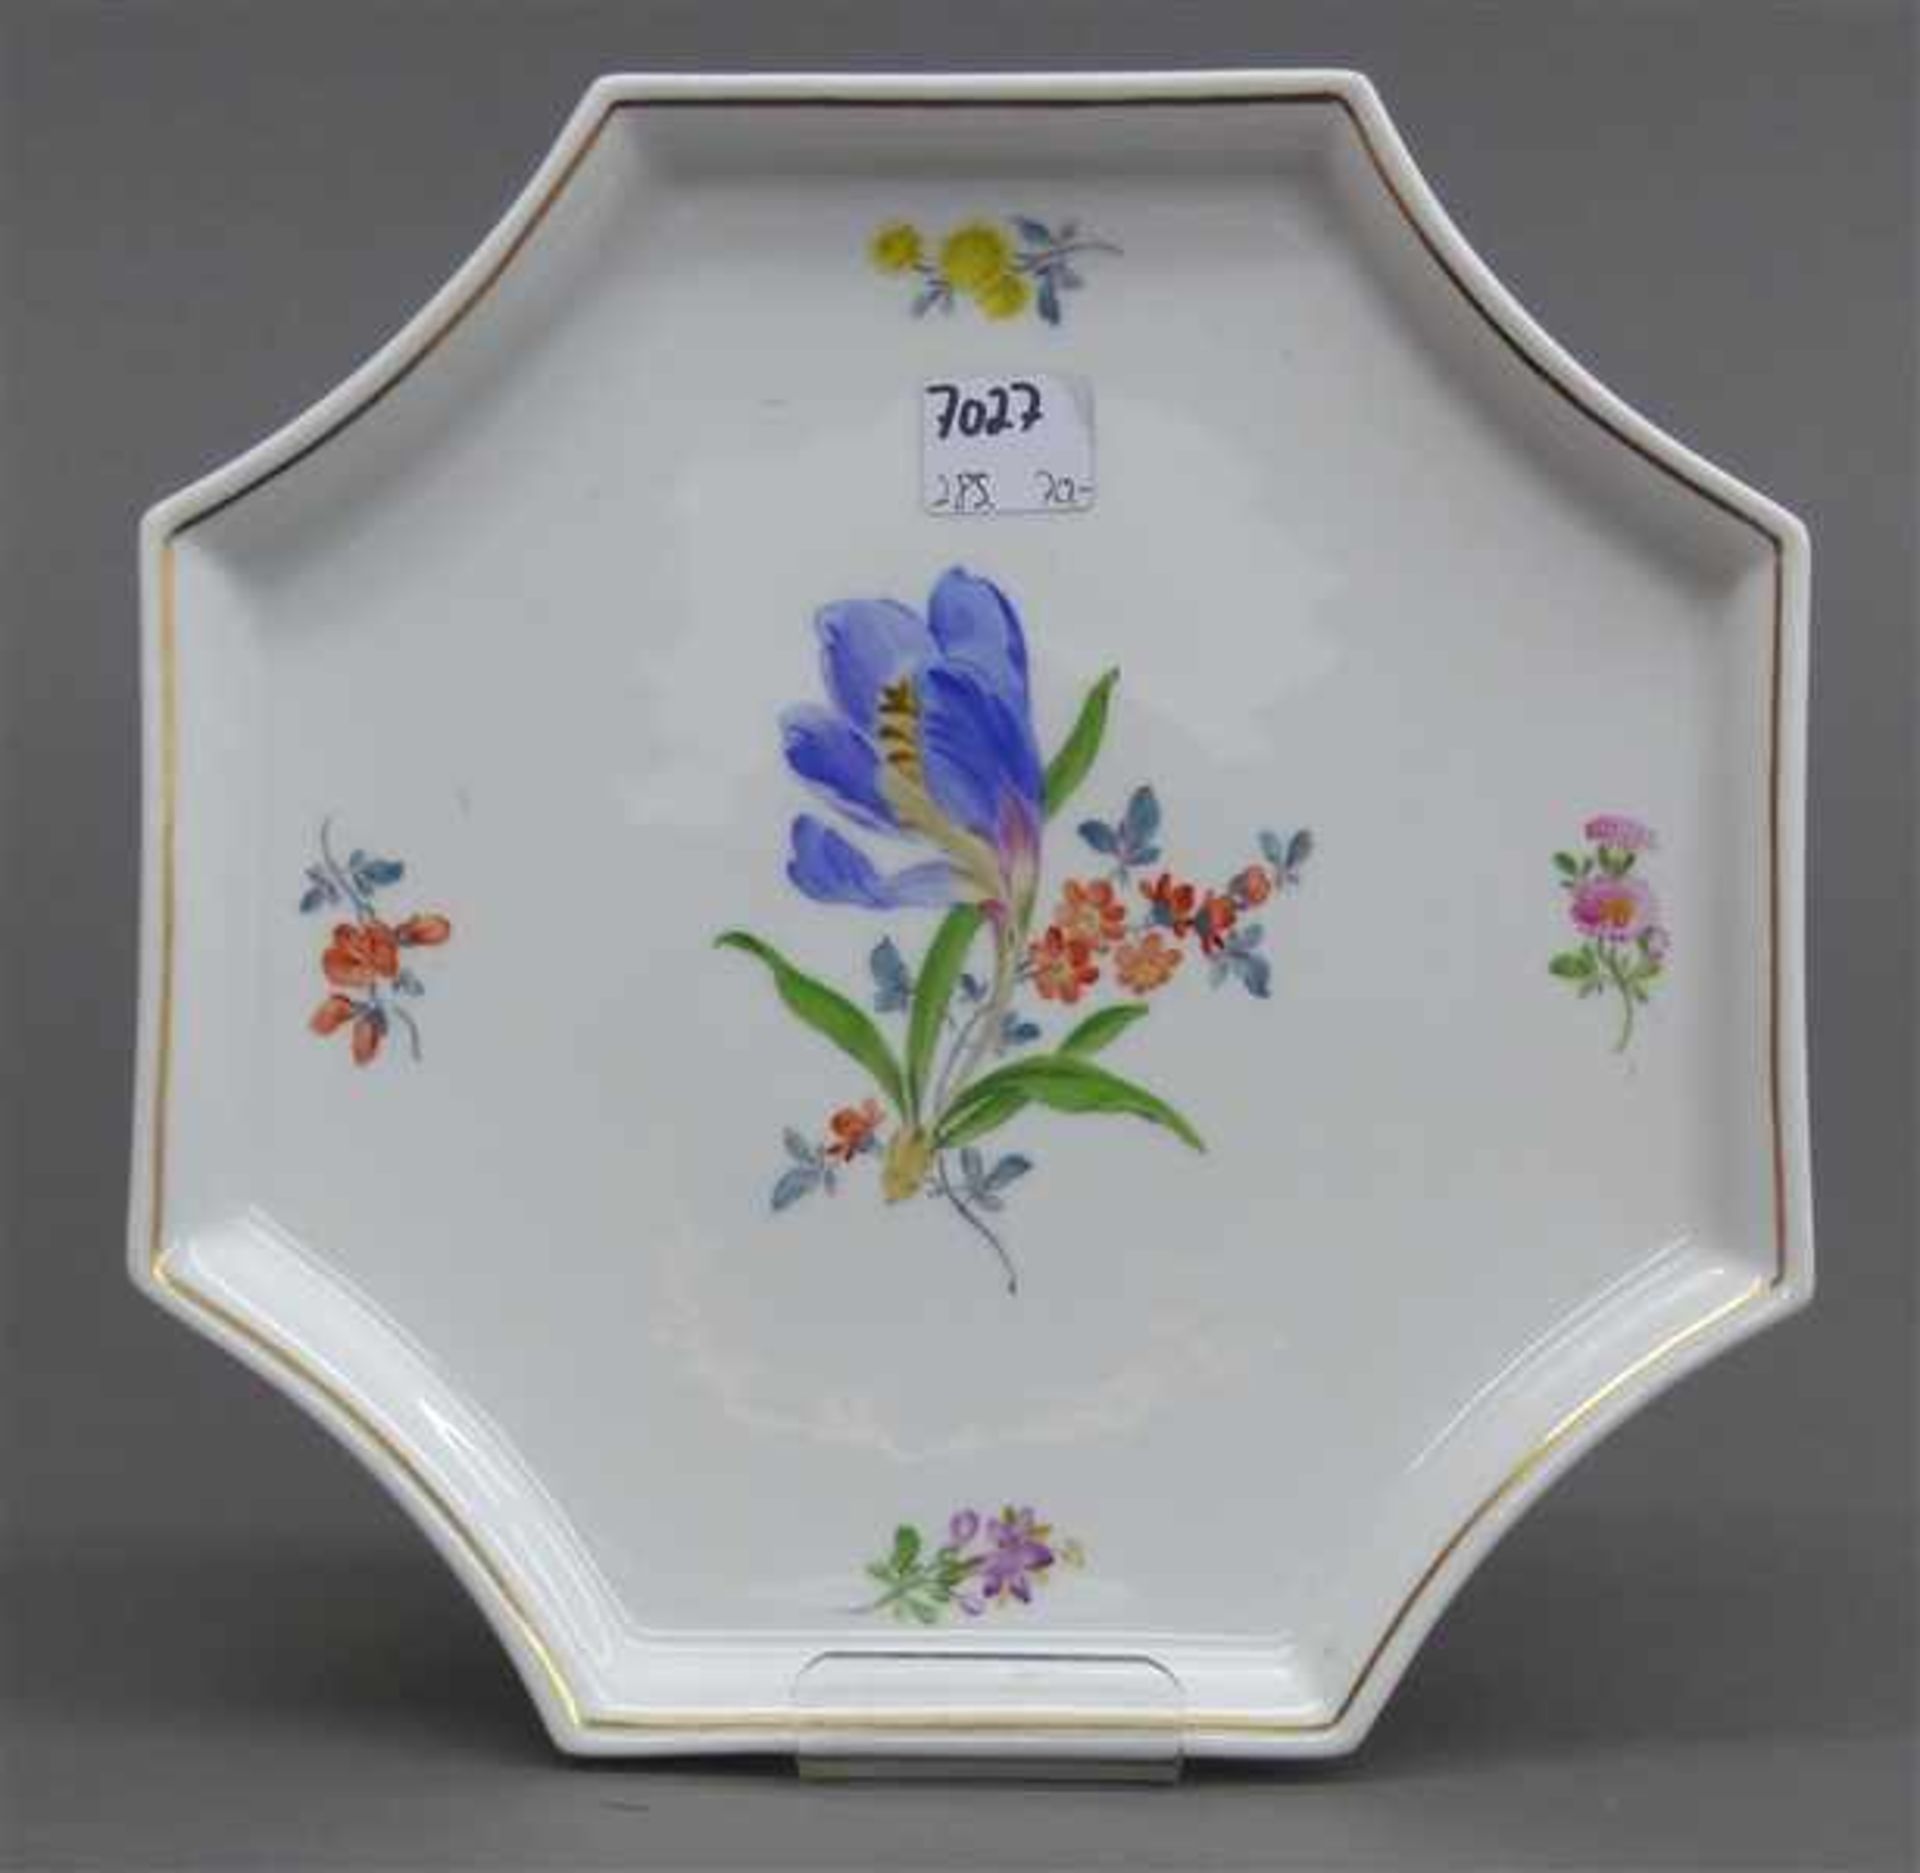 Porzellantablettachteckig, floral bemalt, Goldrand, blaue Schwertermarke, Manufaktur Meissen, 1.